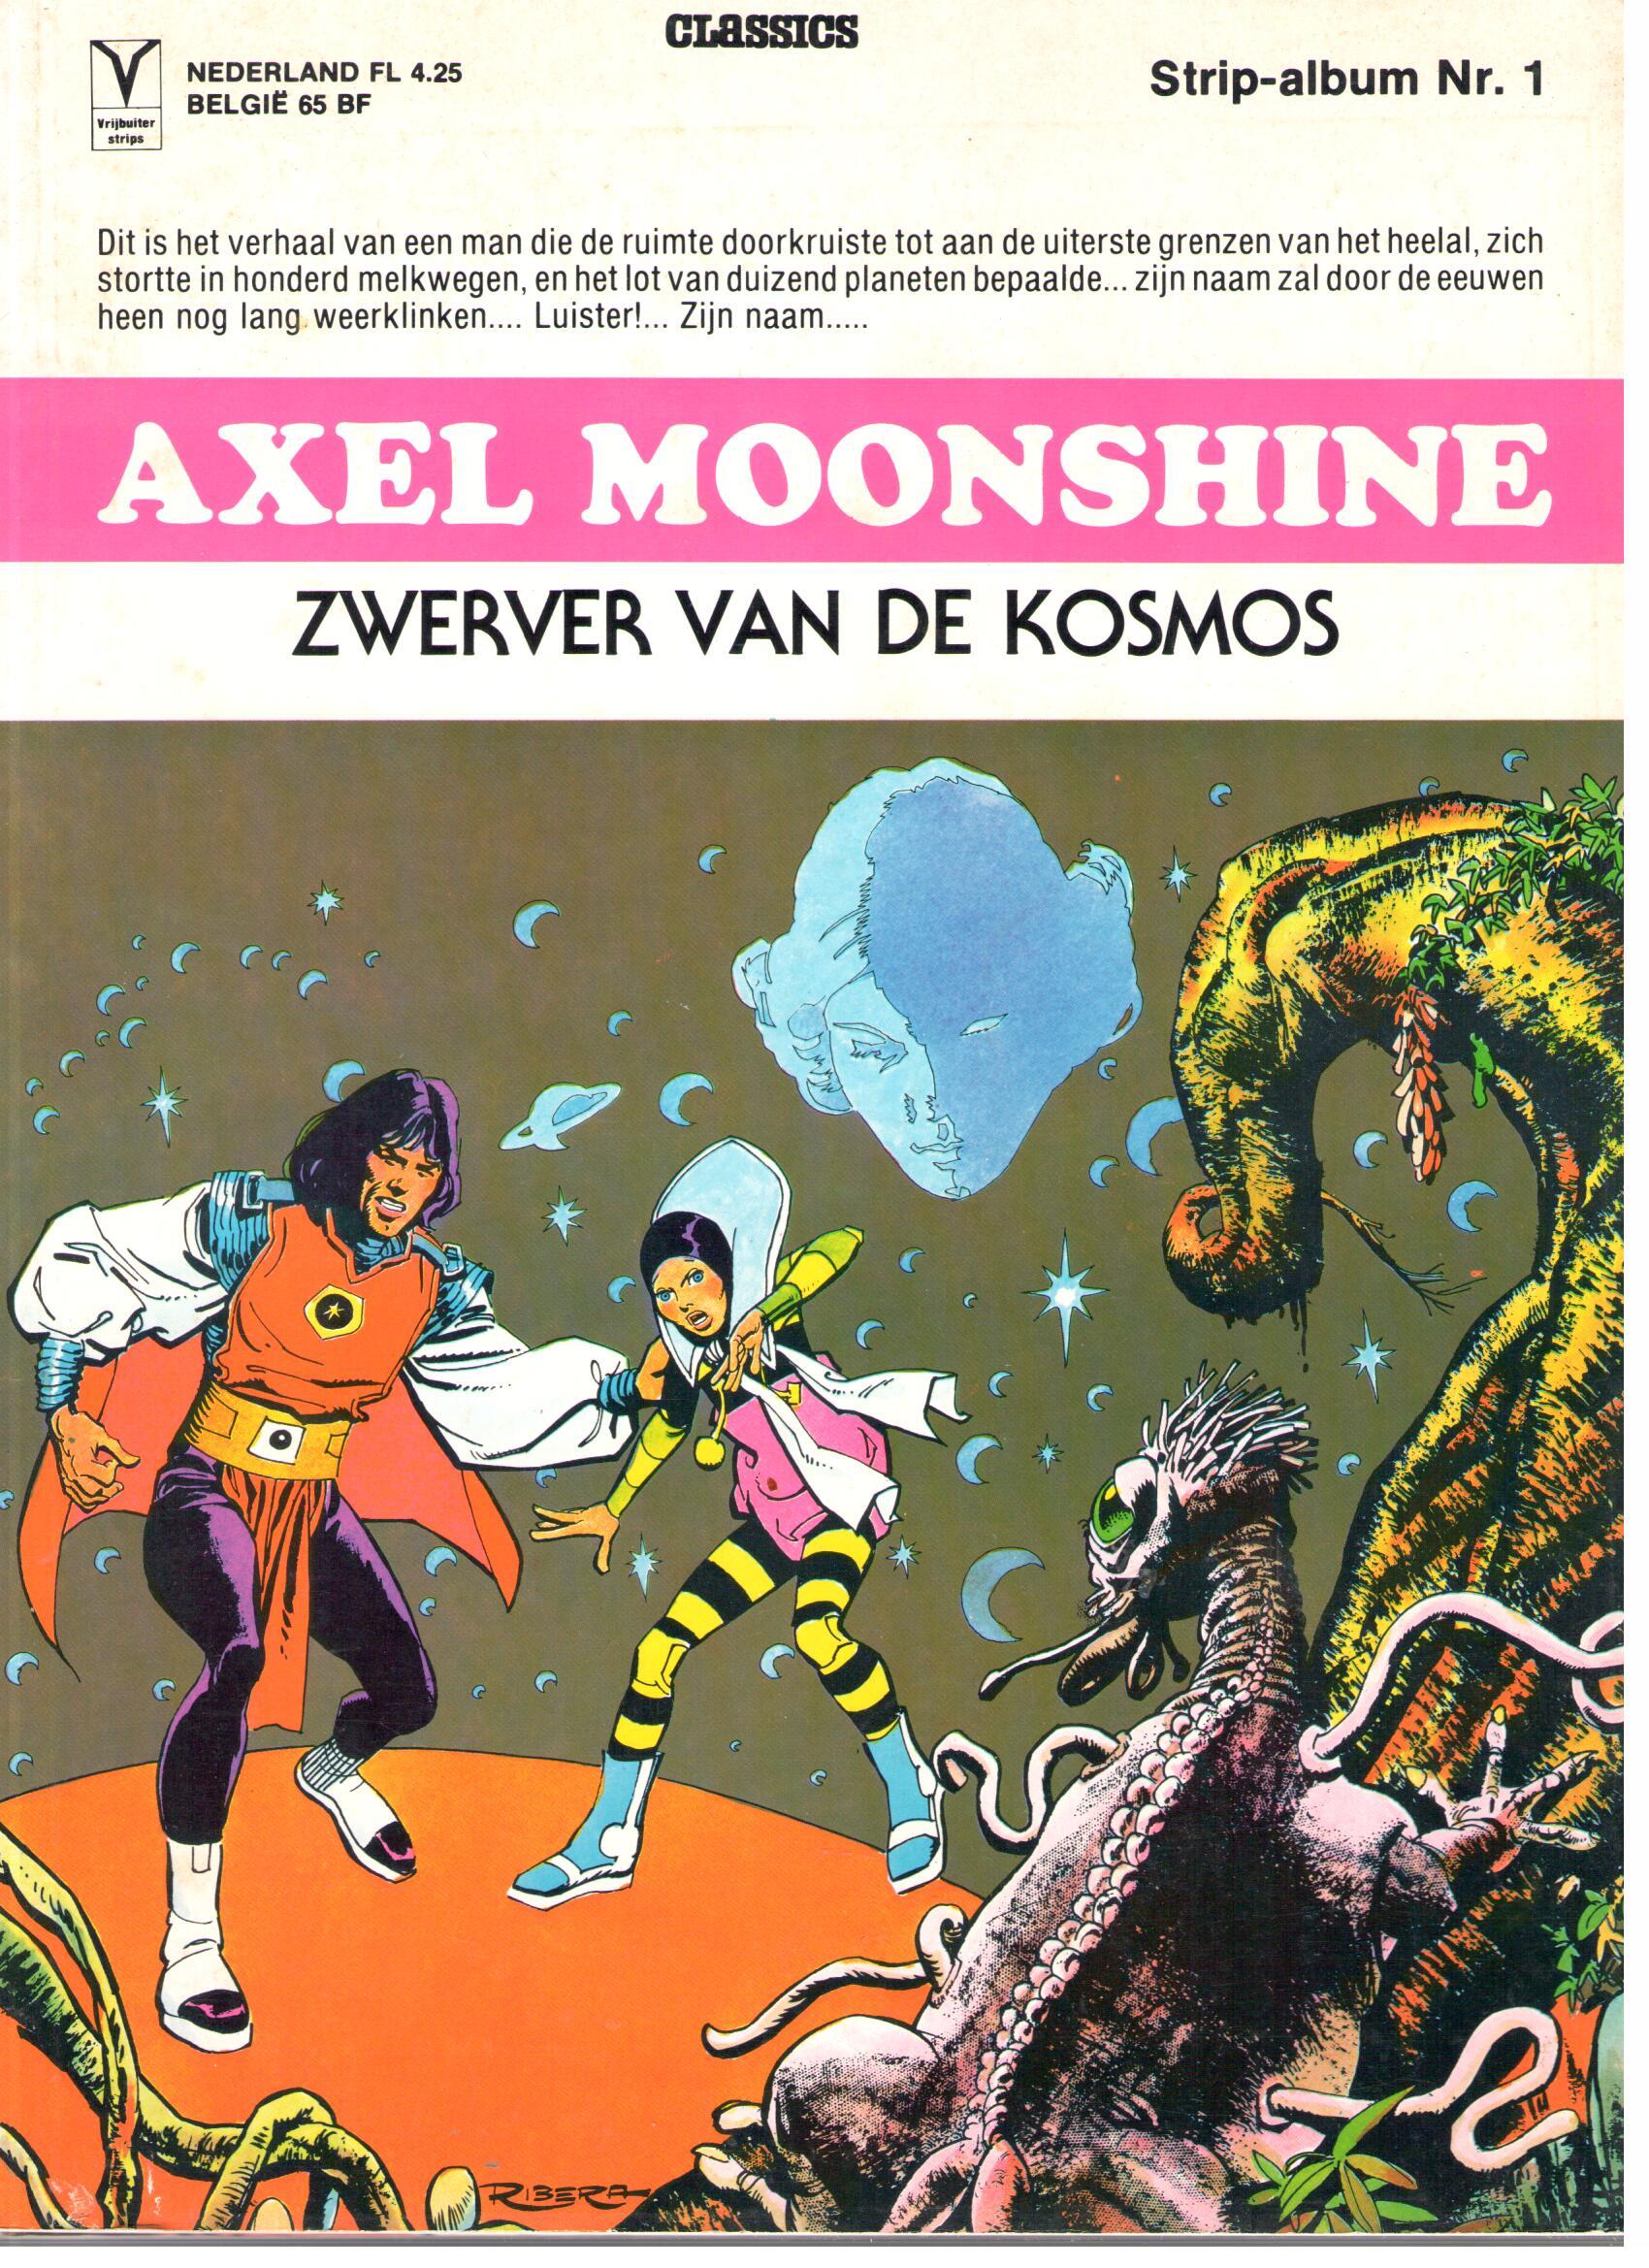 [Strips] Axel Moonshine (32 delen compleet)